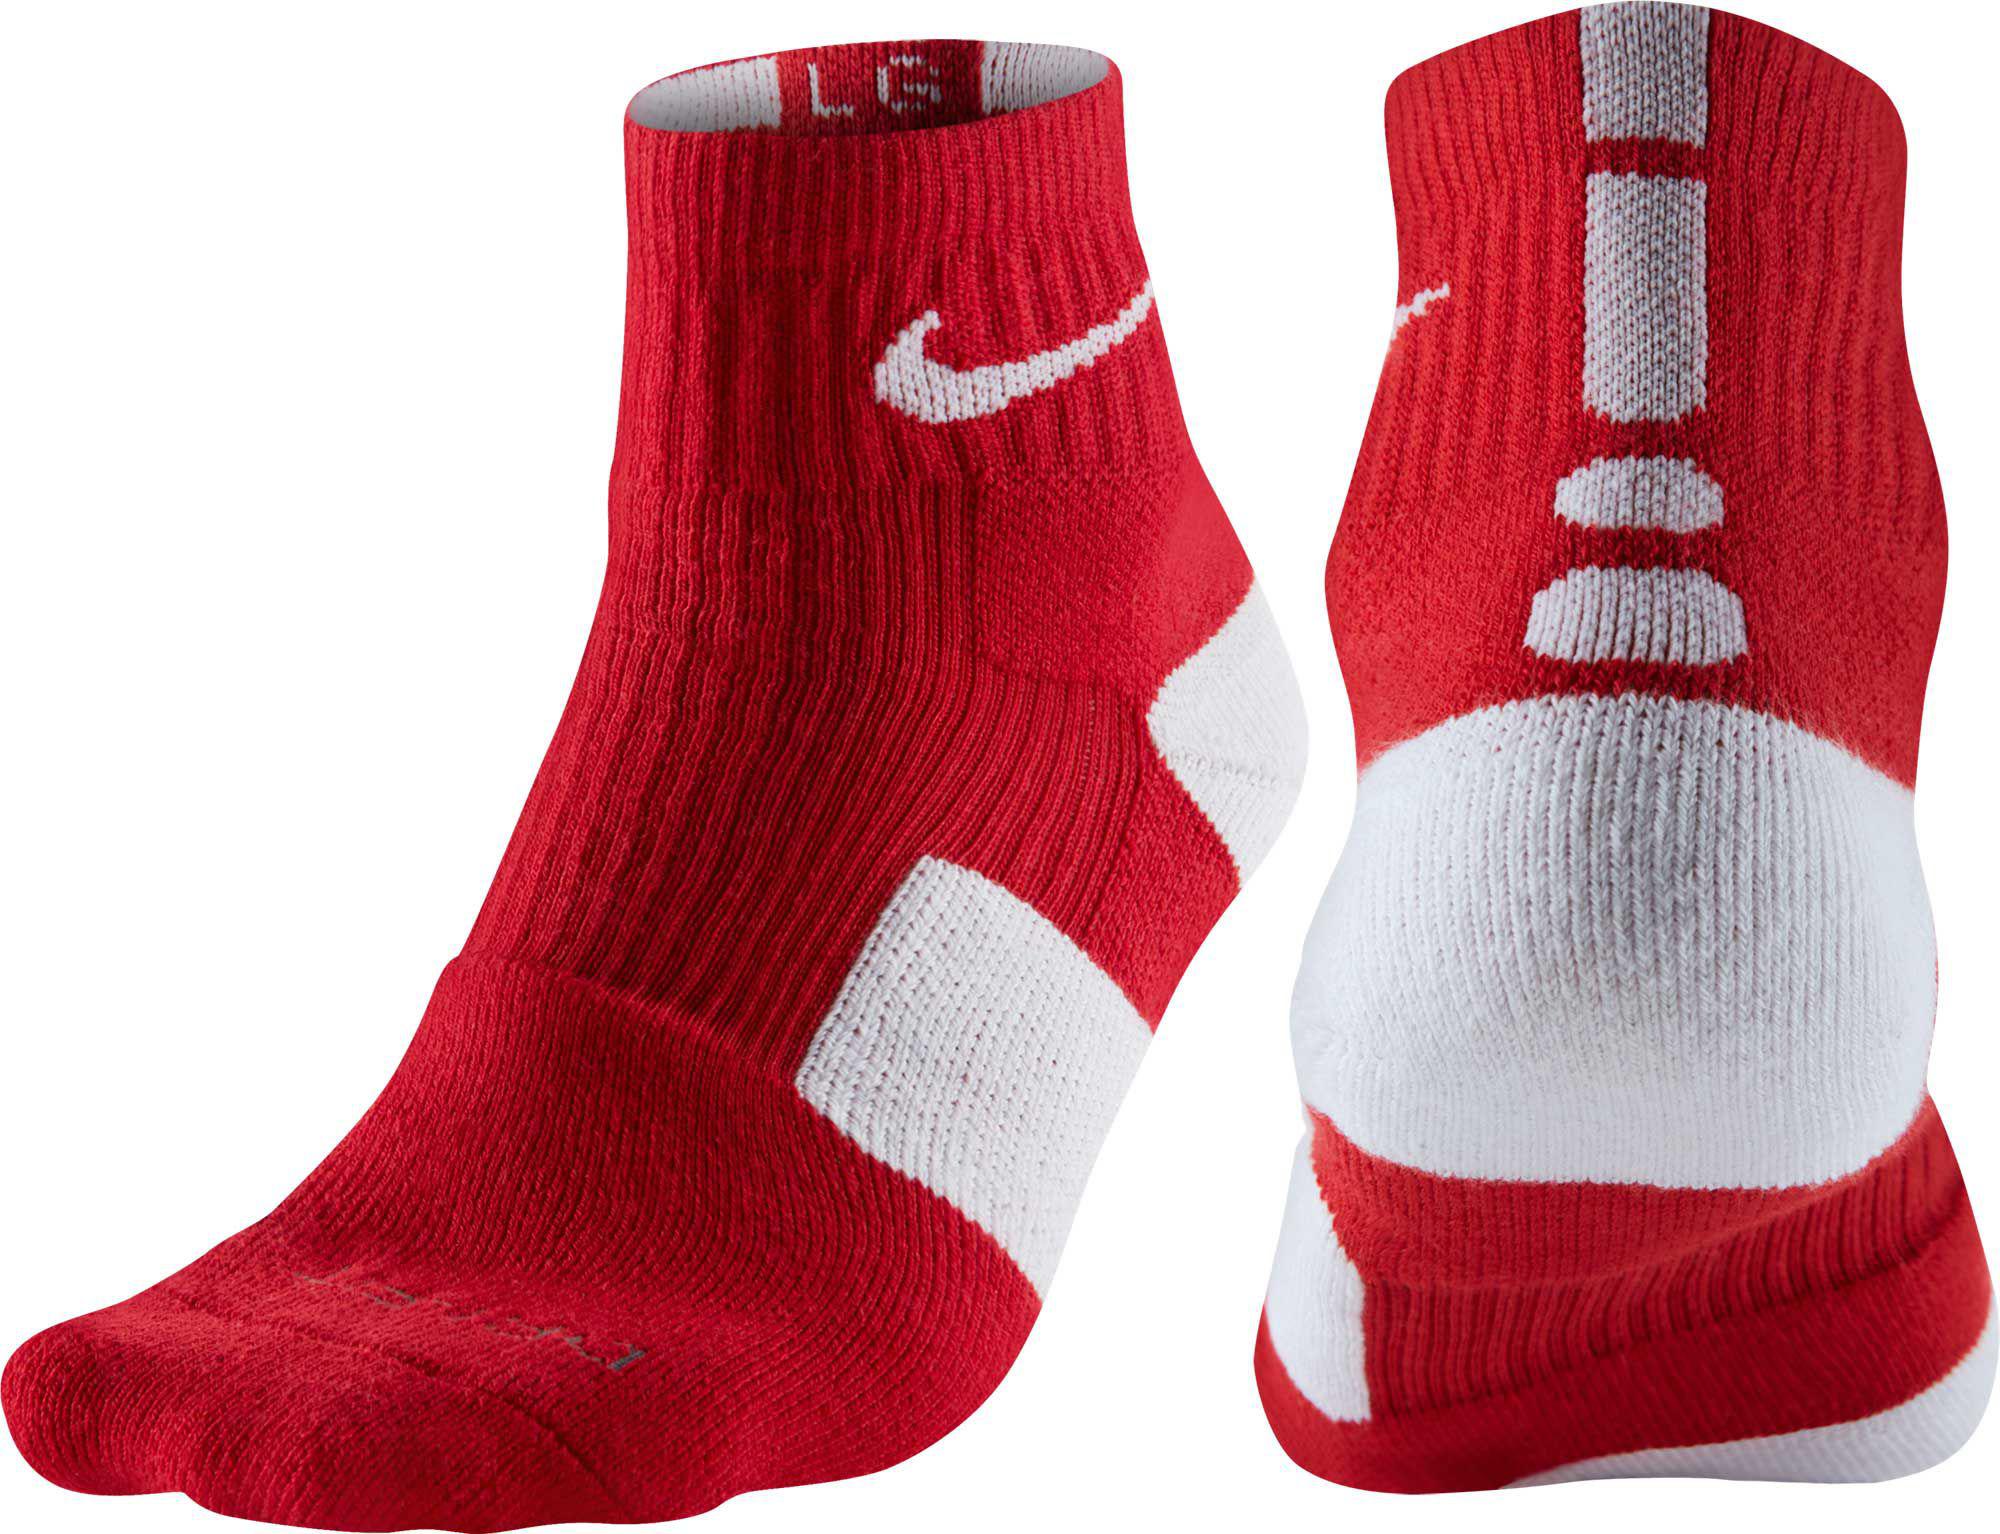 Nike Synthetic Elite High Quarter Basketball Socks in Red/White (Red nike elite socks red yellow